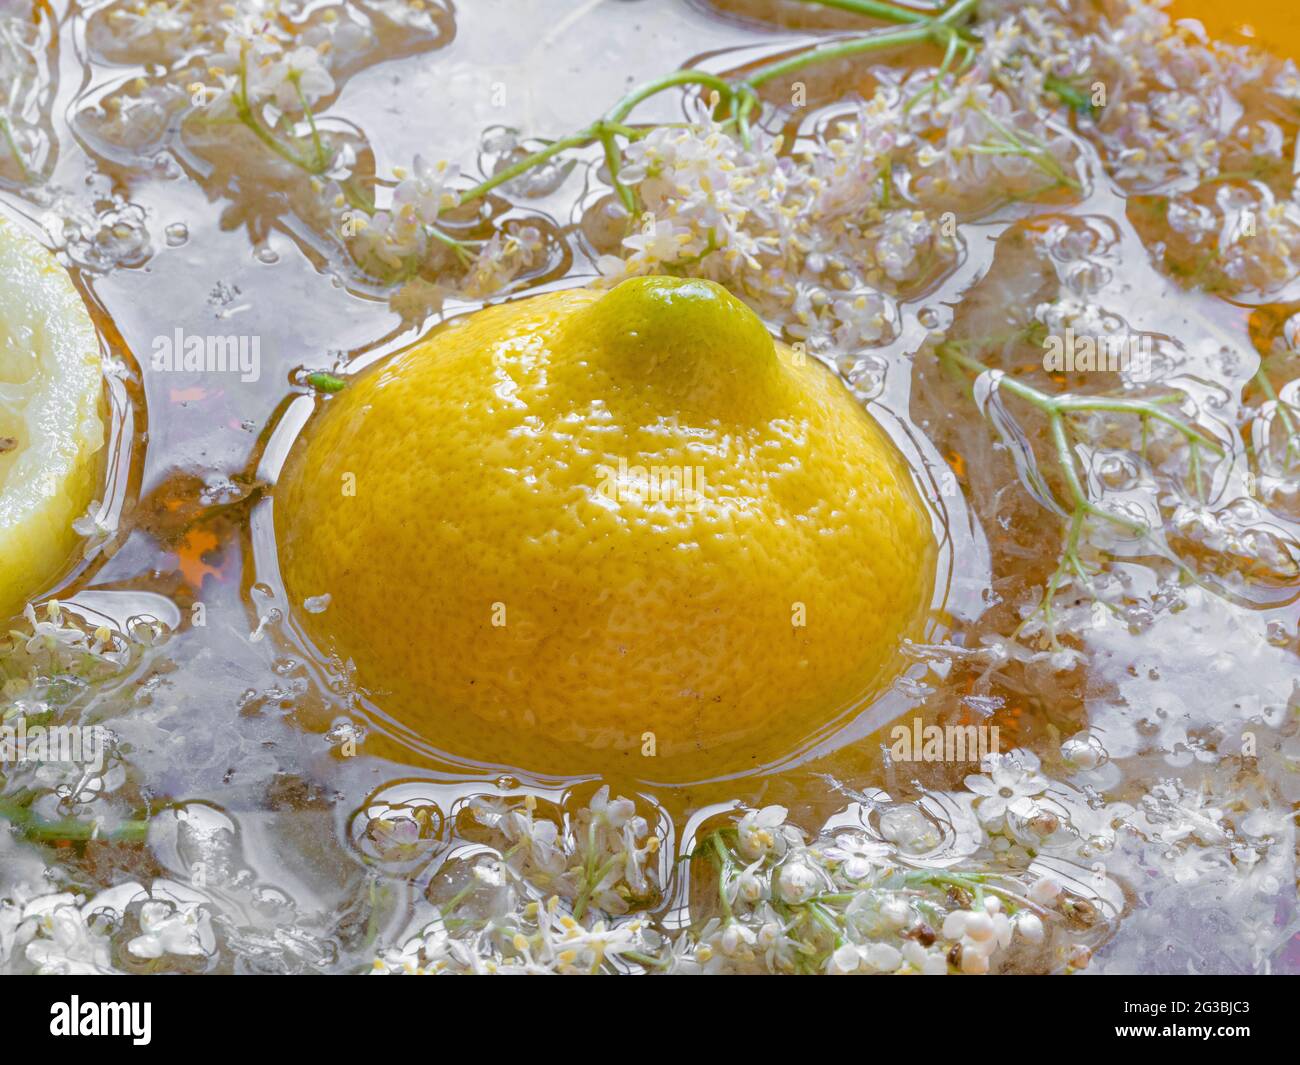 Flores de flor de saúco y limón en agua para hacer flor de saúco cordial. Foto de stock